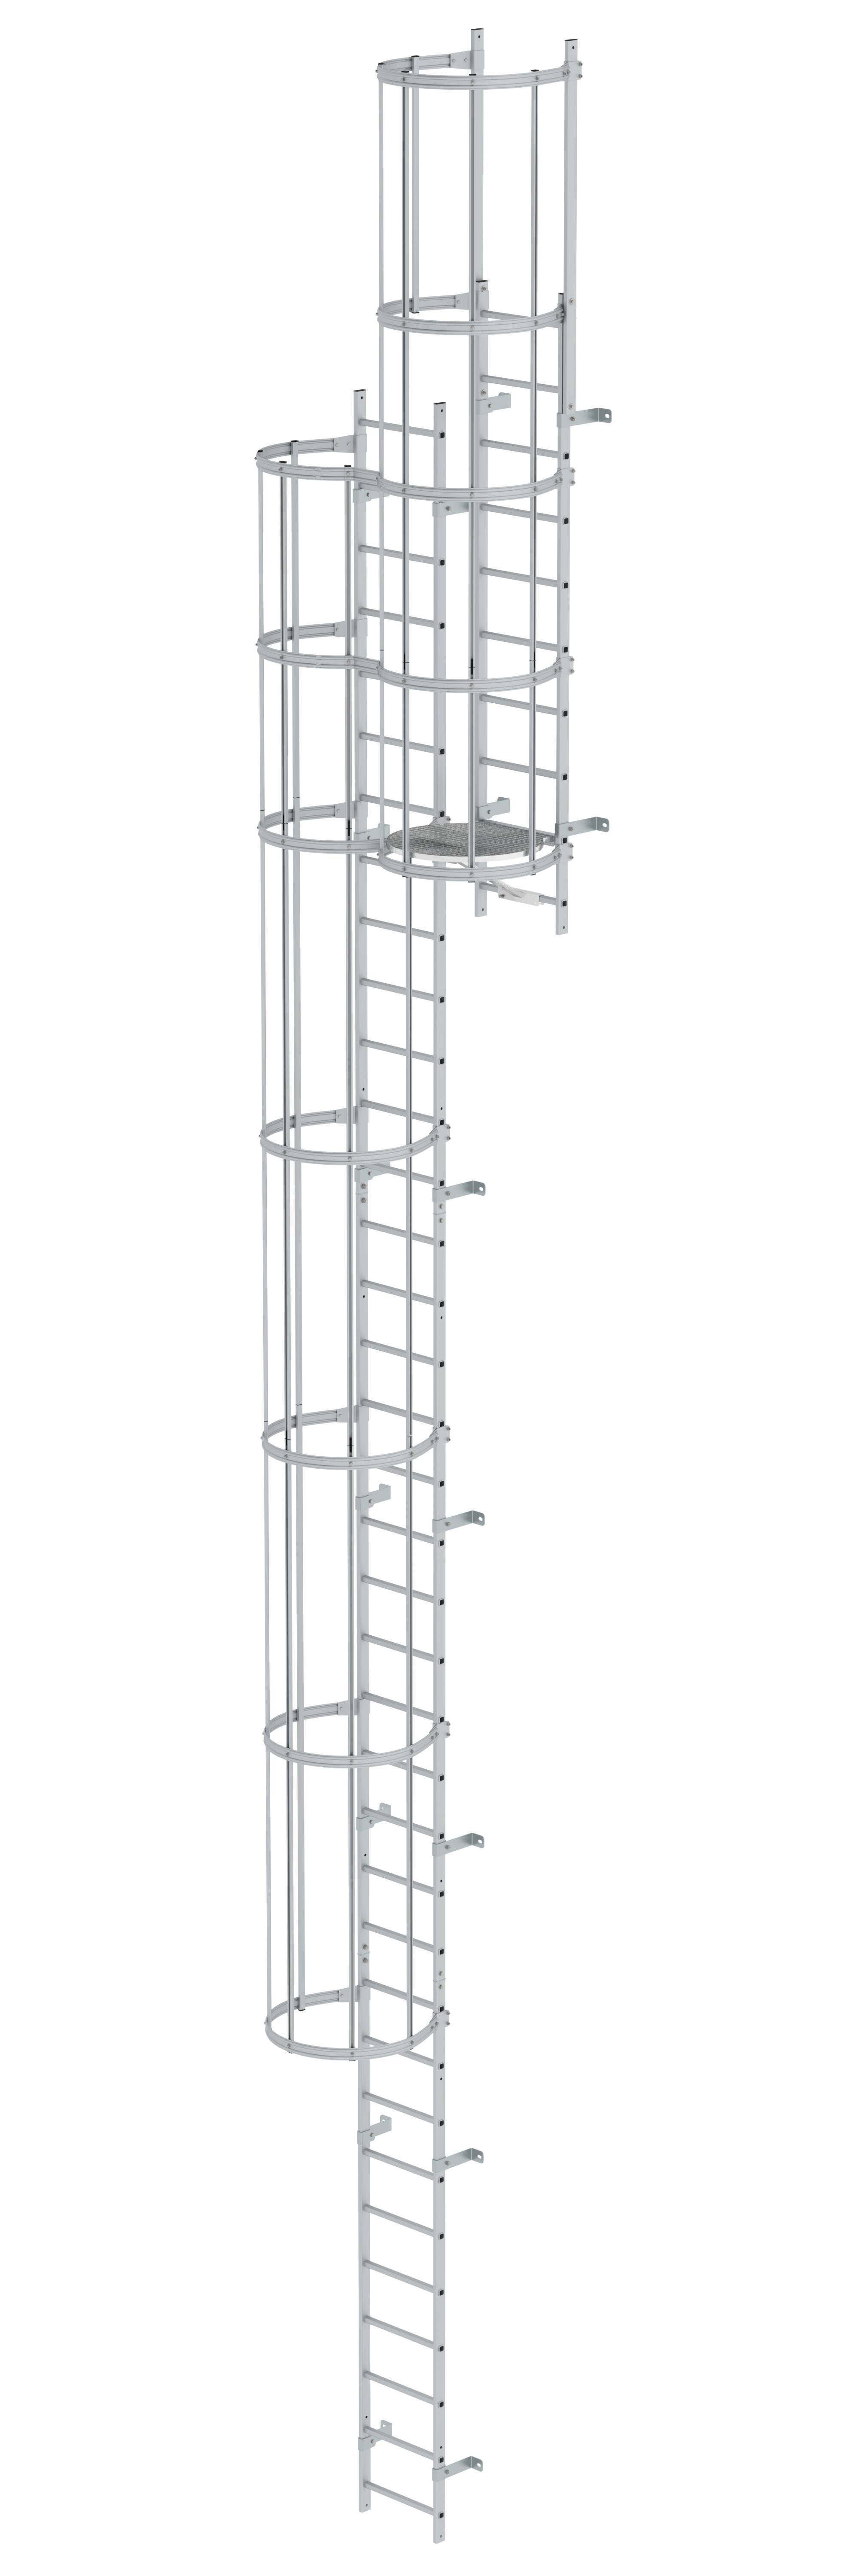 MUNK Mehrzügige Steigleiter mit Rückenschutz (Bau) Aluminium eloxiert  